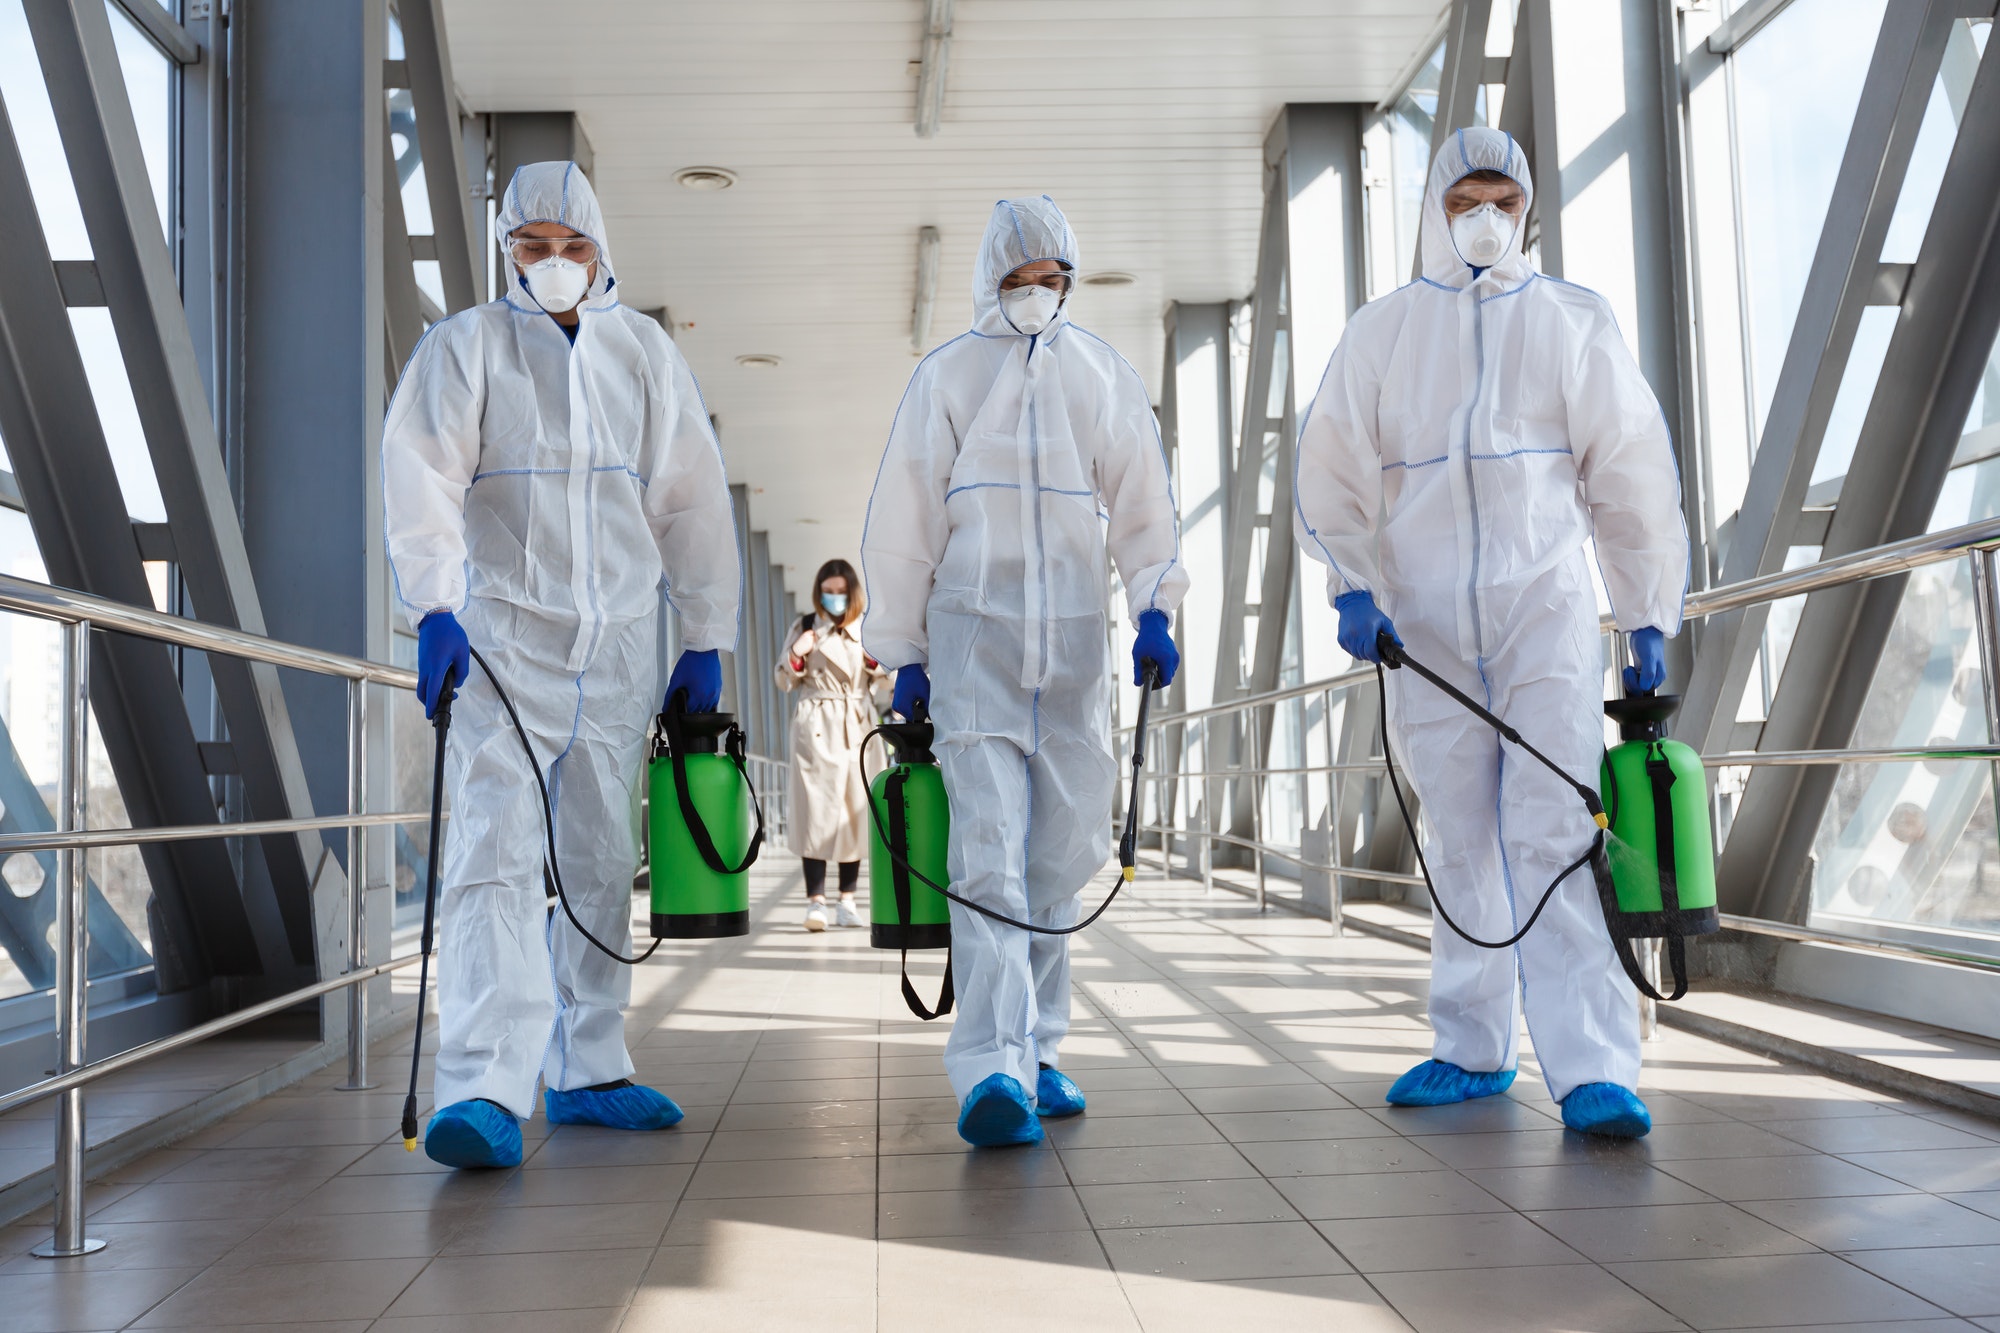 Specialist in hazmat suits cleaning disinfecting coronavirus